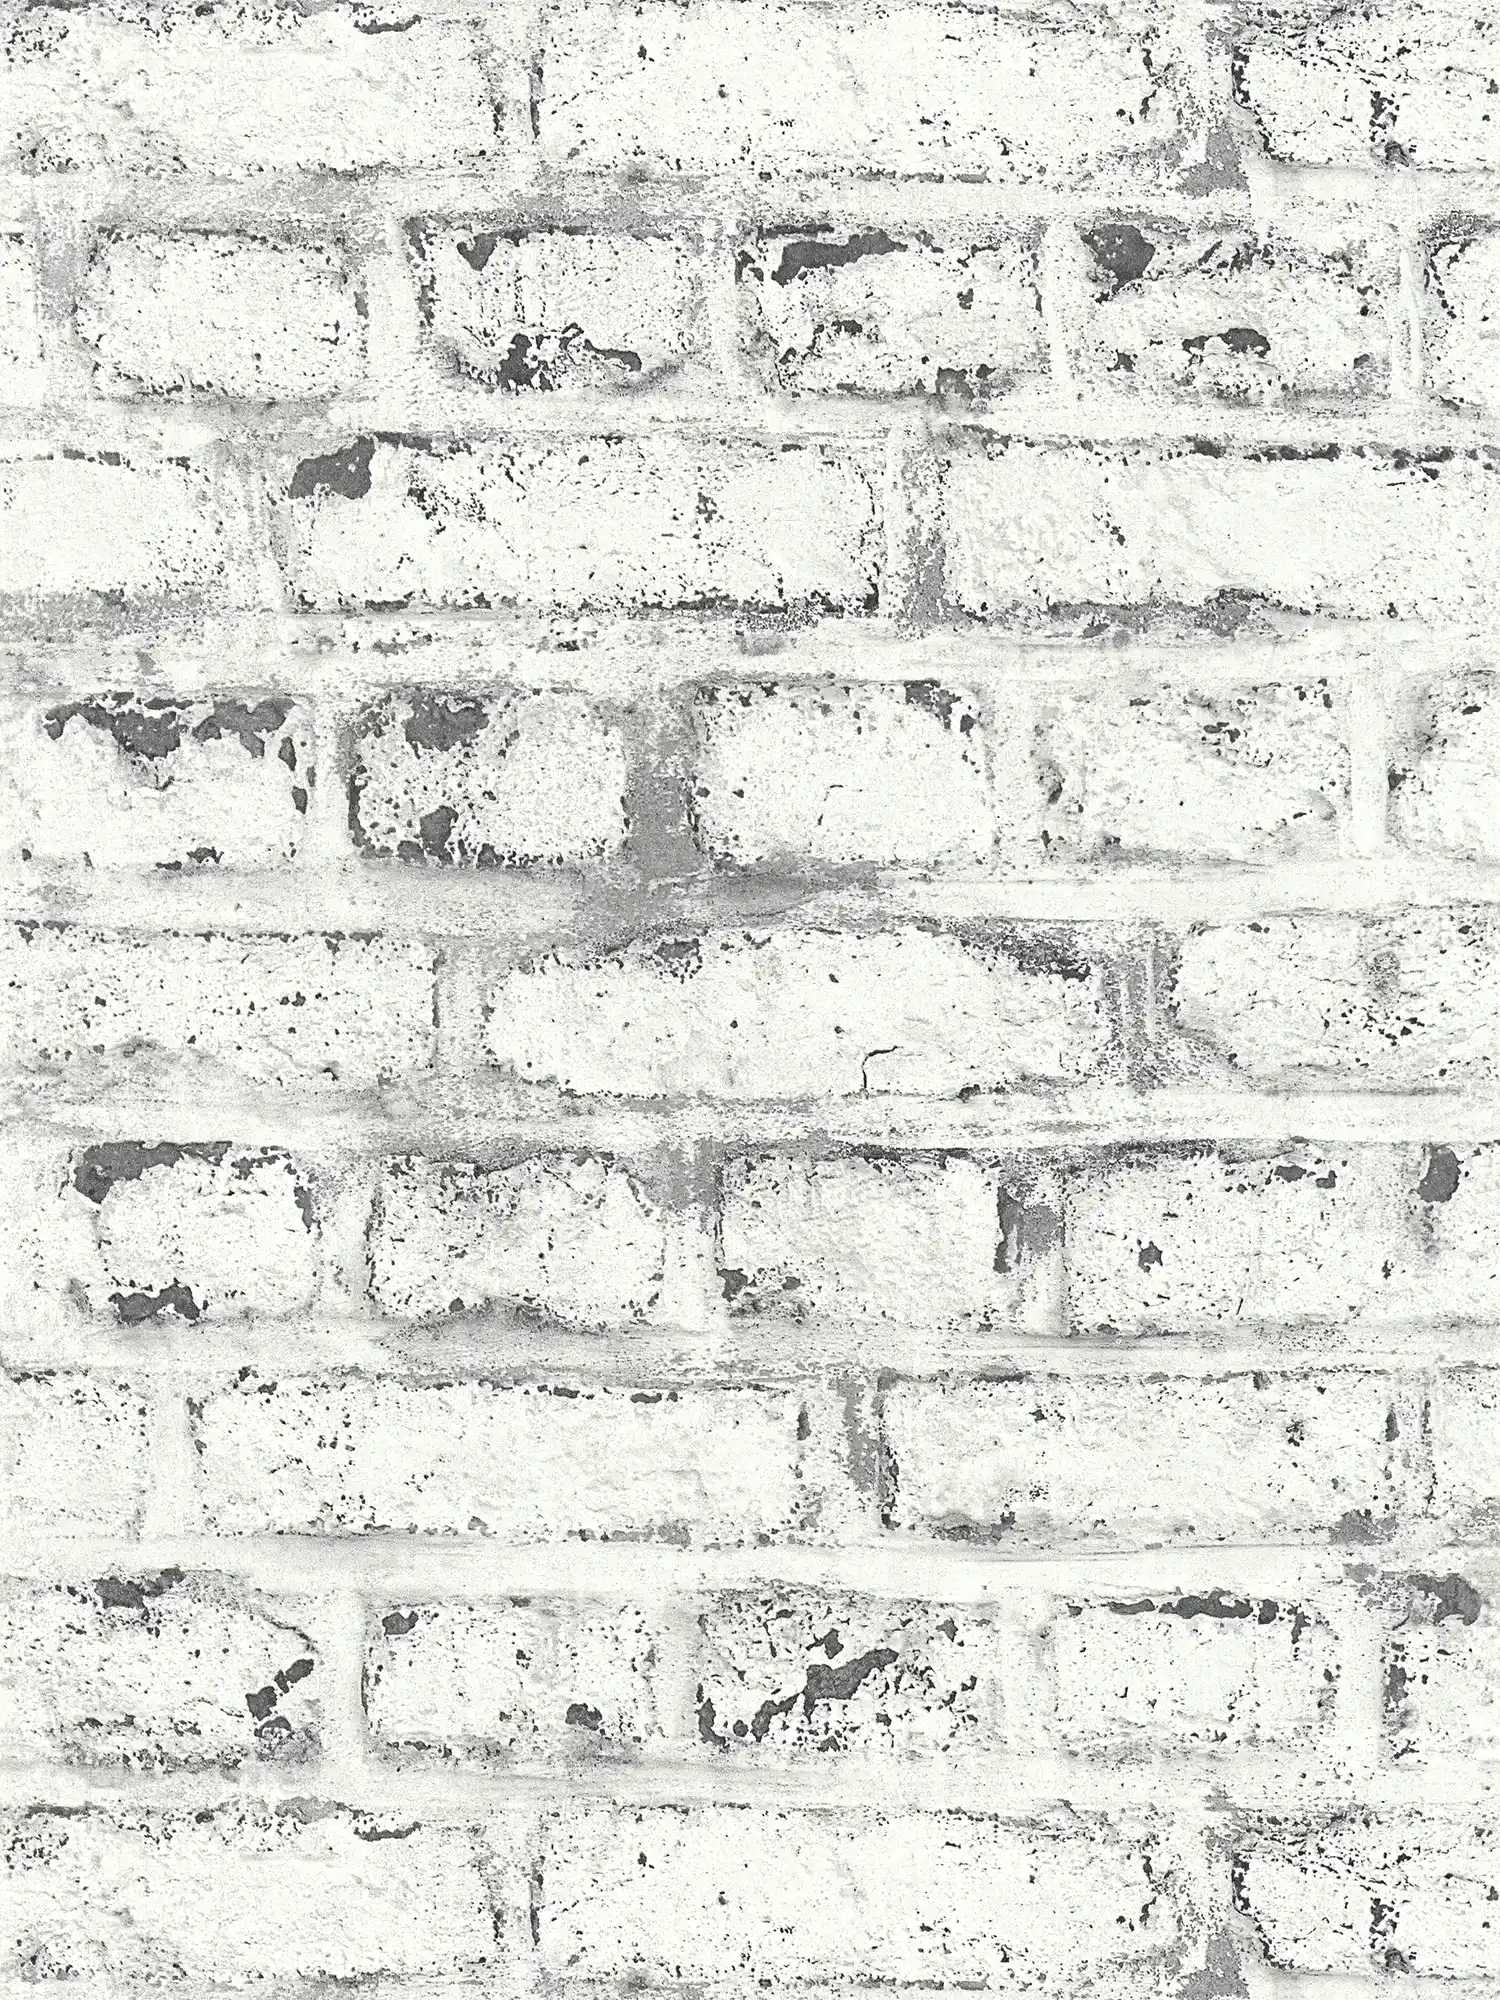 Steenbehang witte bakstenen muur, industriële stijl - wit, grijs
